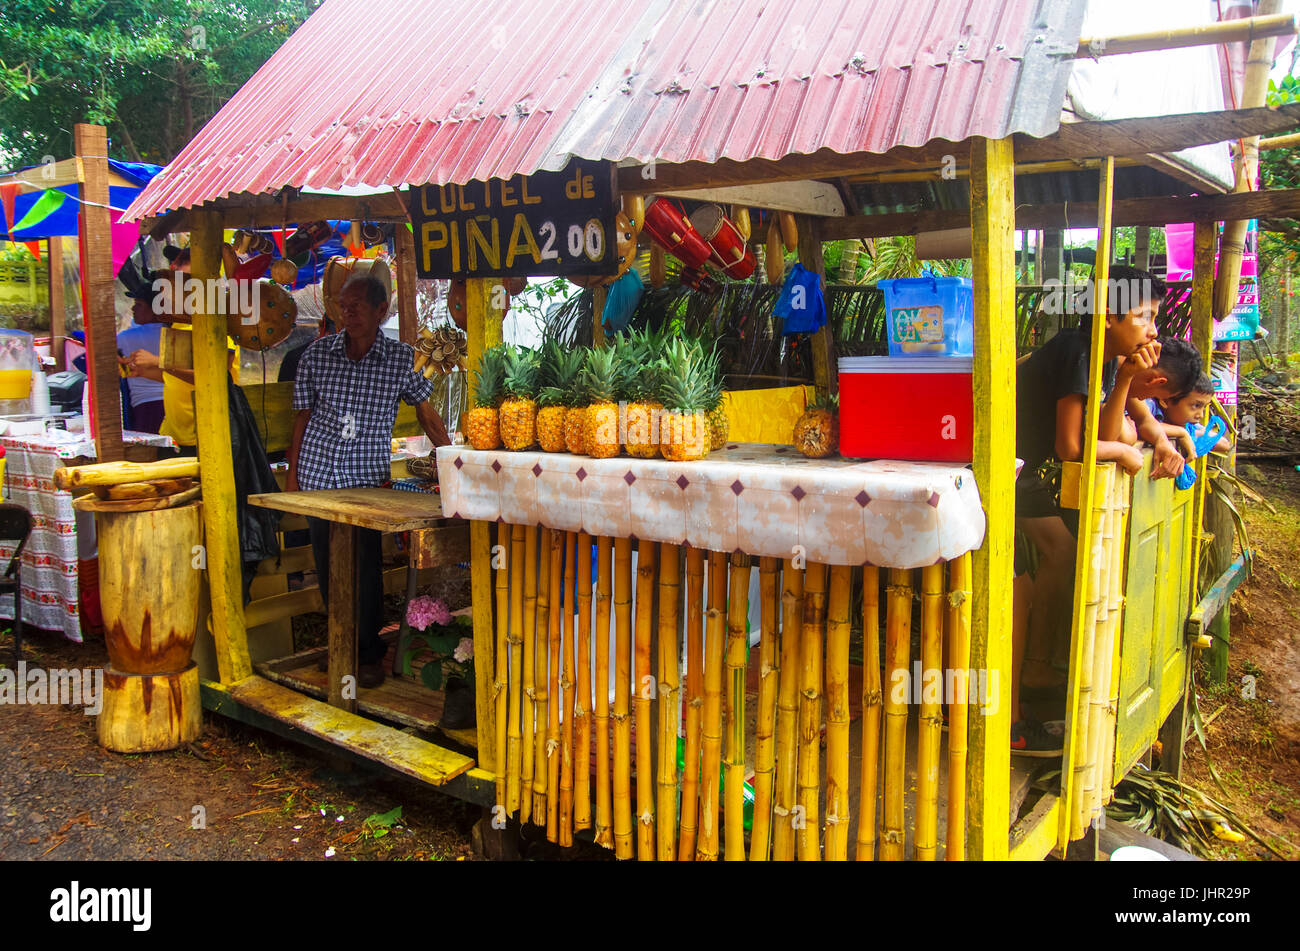 Puesto de frutas venta de cócteles de piña en Panamá Foto de stock